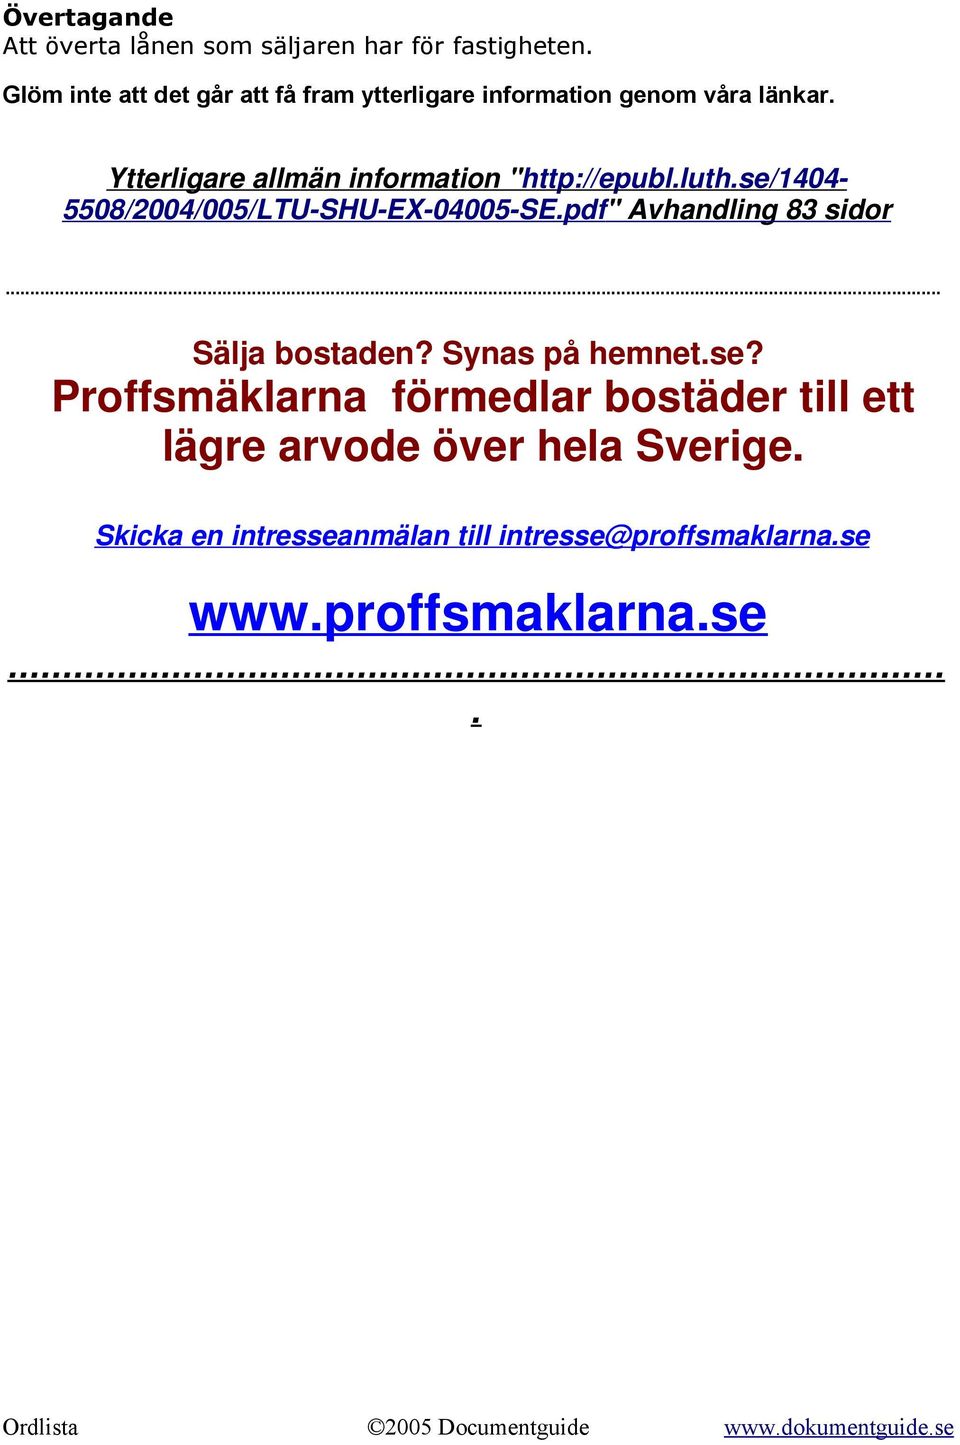 Ytterligare allmän information "http://epubl.luth.se/1404-5508/2004/005/ltu-shu-ex-04005-se.